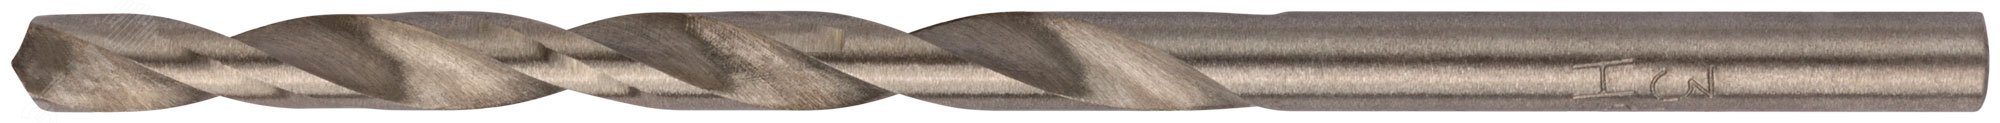 Сверла по металлу HSS полированные 3.5 мм (10 шт) 33735 FIT - превью 2